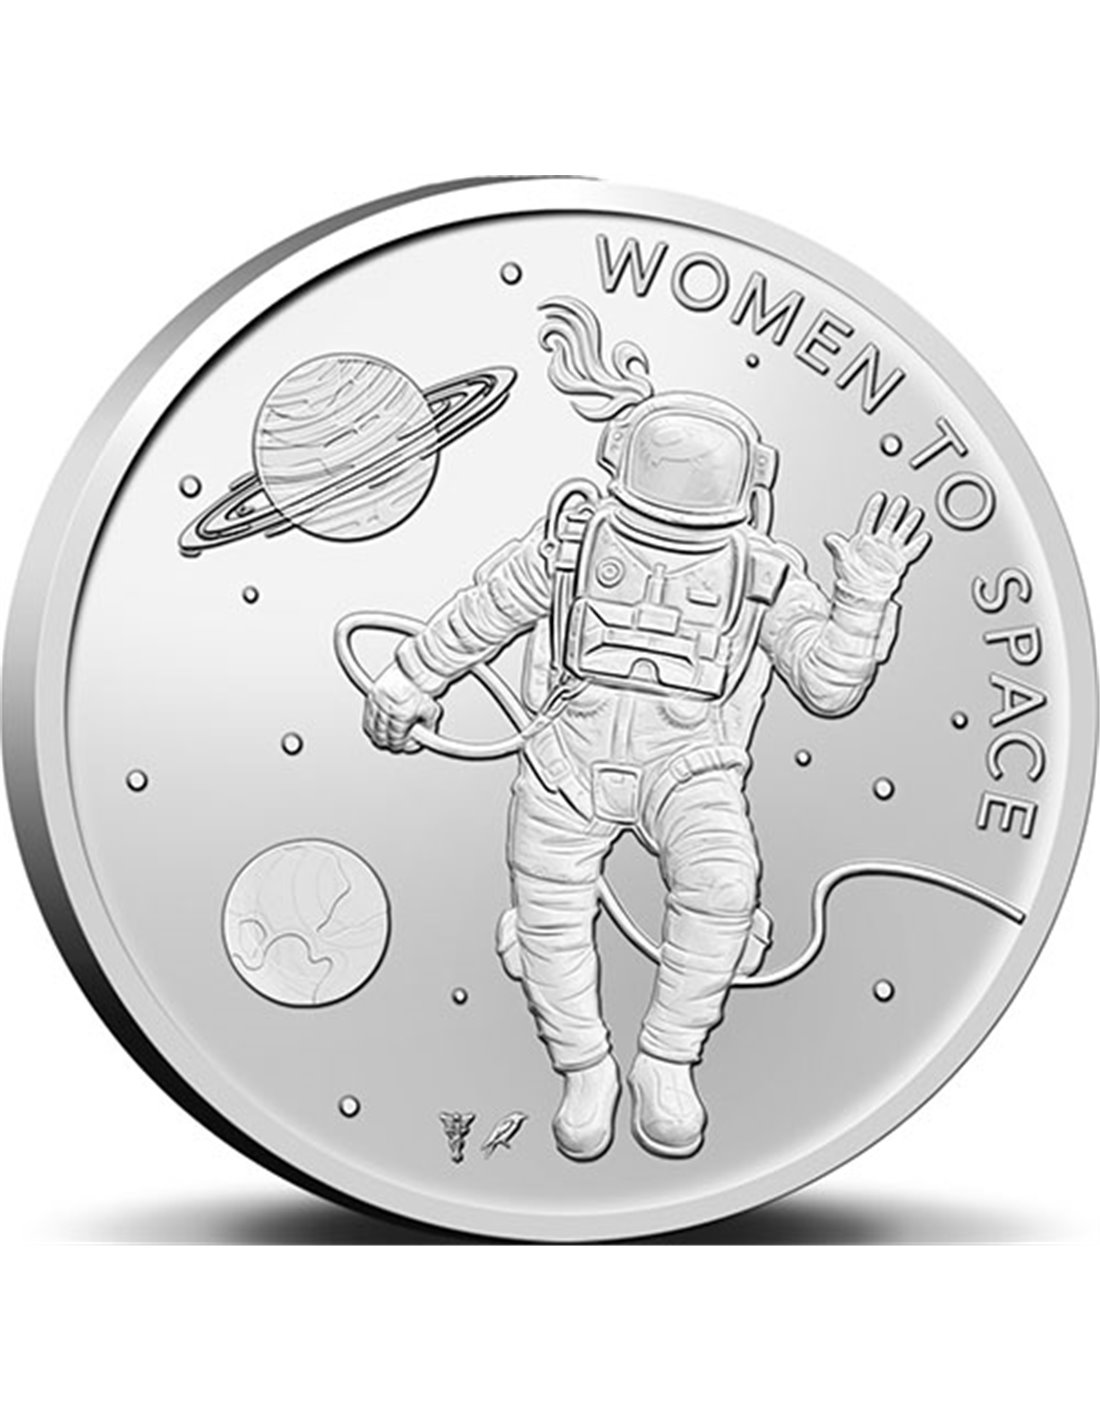 WOMAN TO SPACE Fundación Cosmic Girls Blister Moneda 1 Euro Países